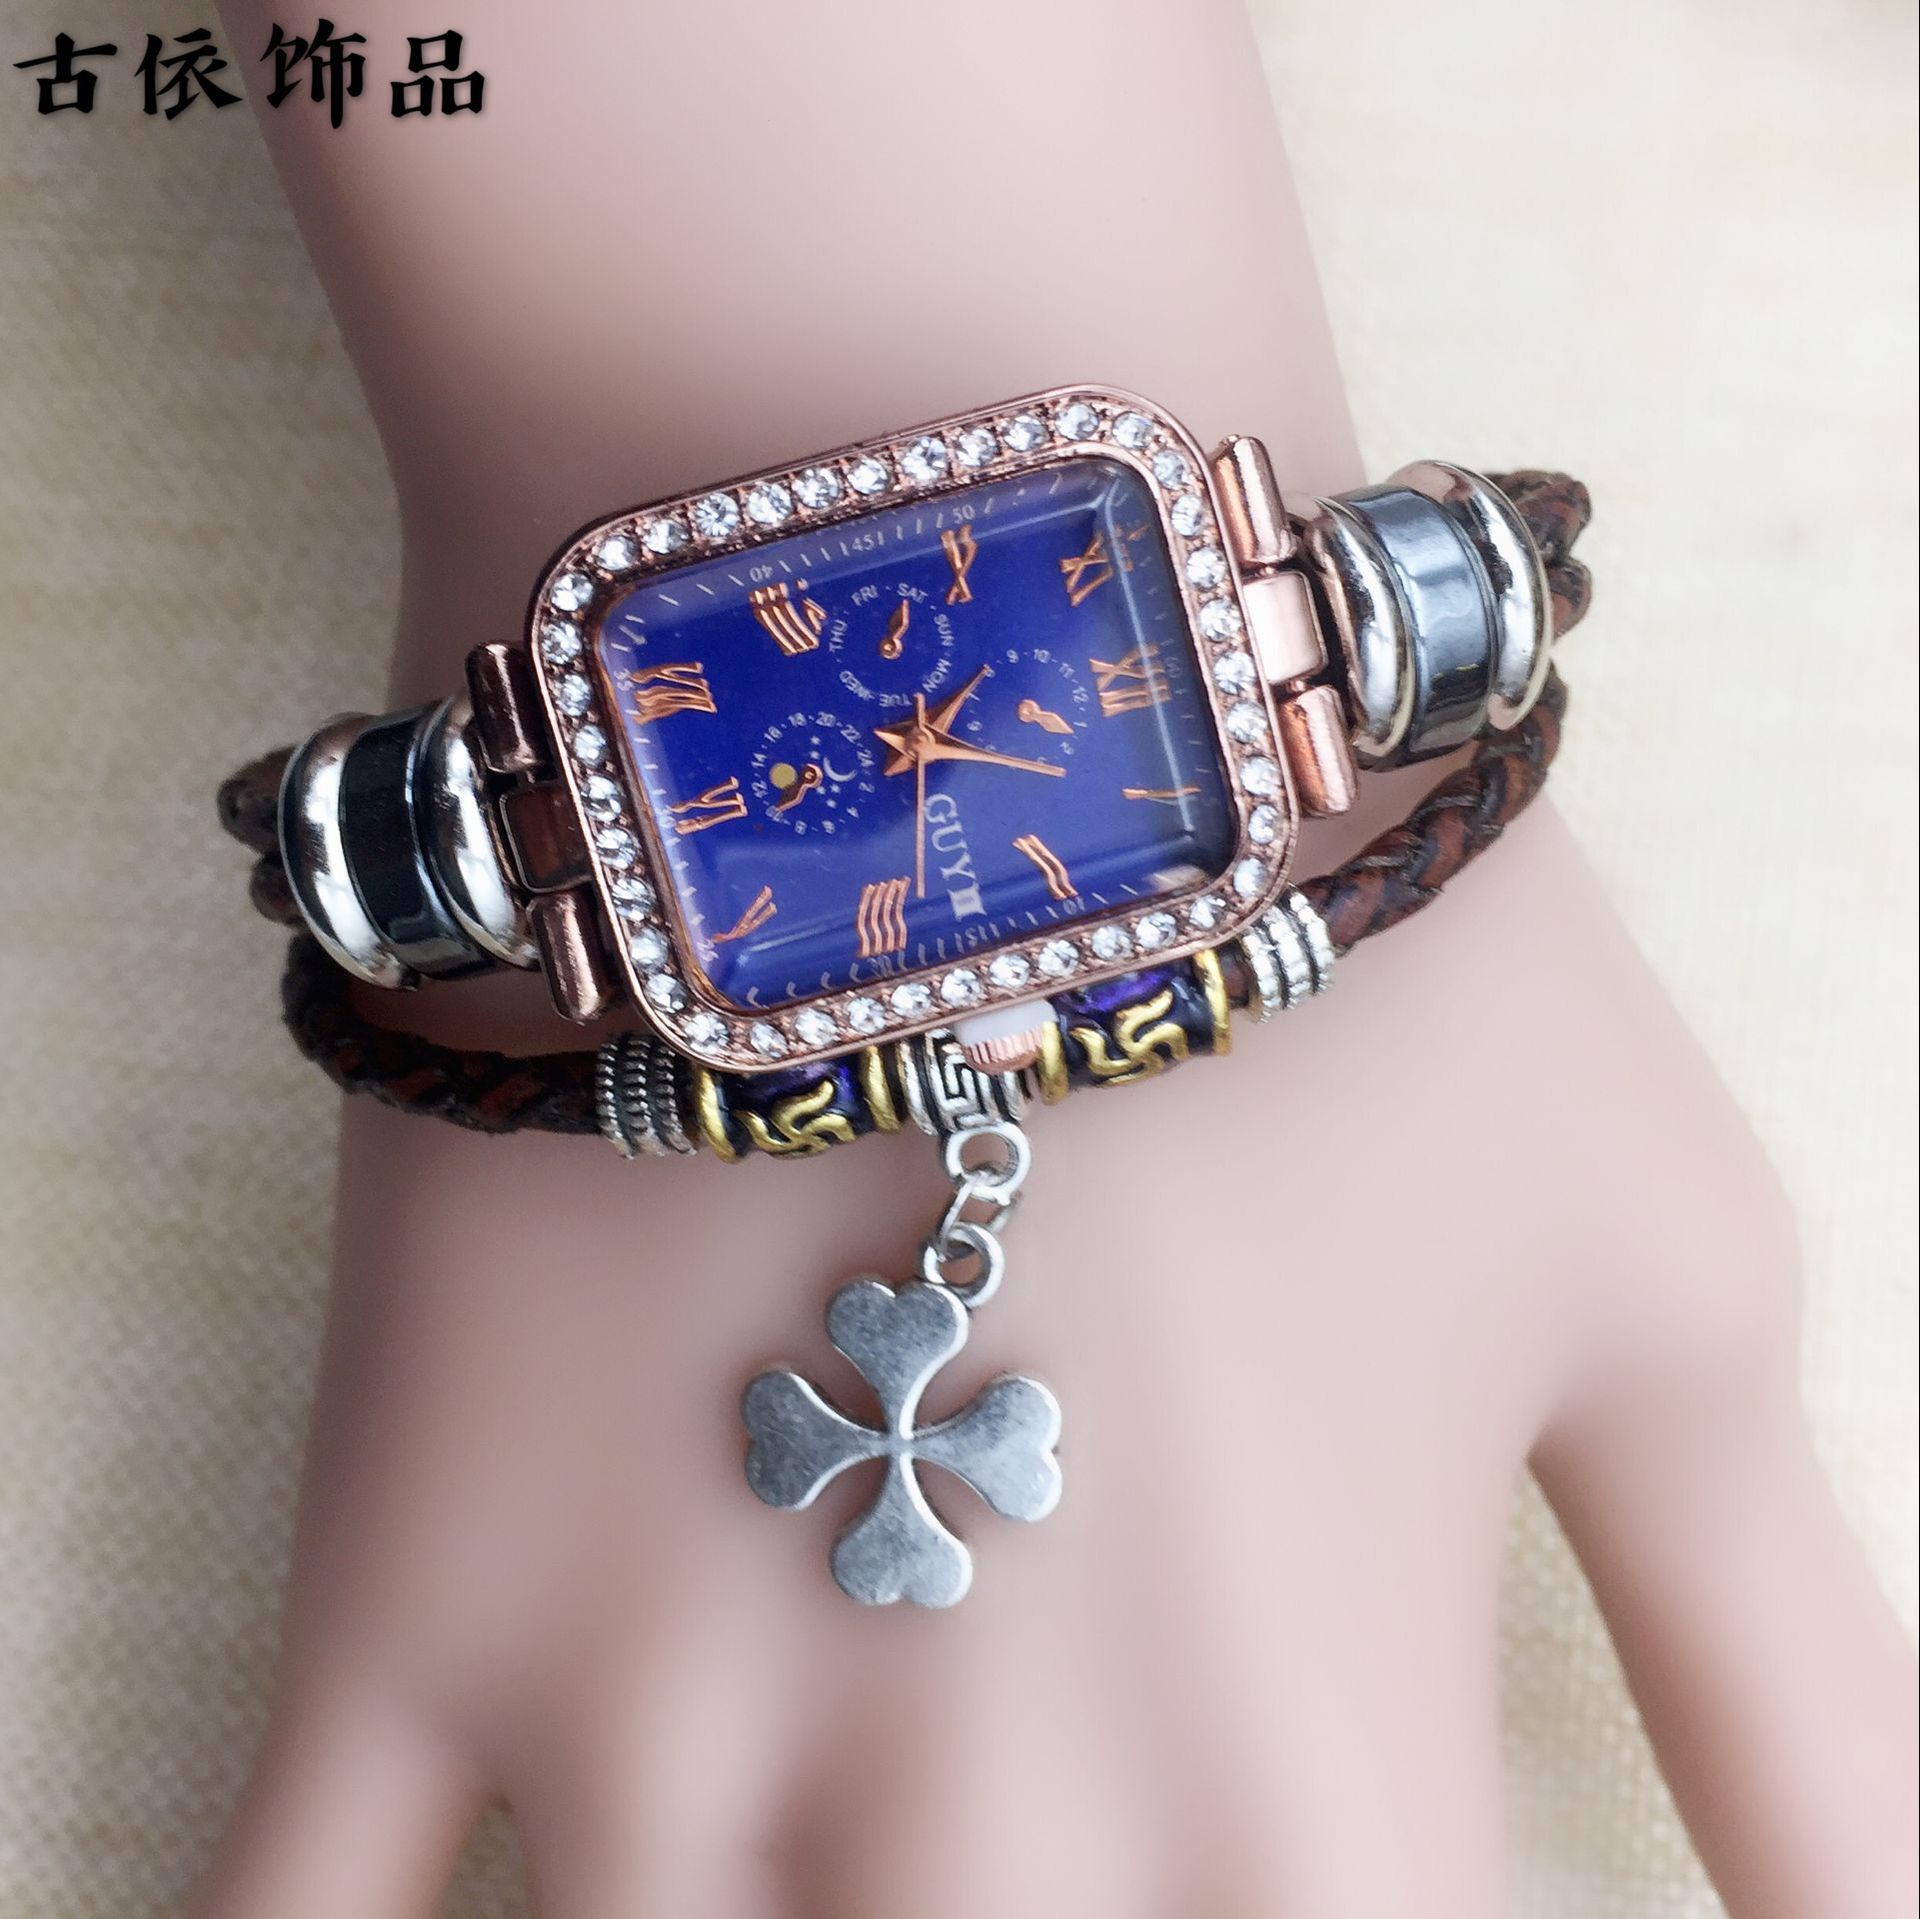 上海古依皮饰品批发长方形石英表地摊货真皮手表扣手链表厂家直销